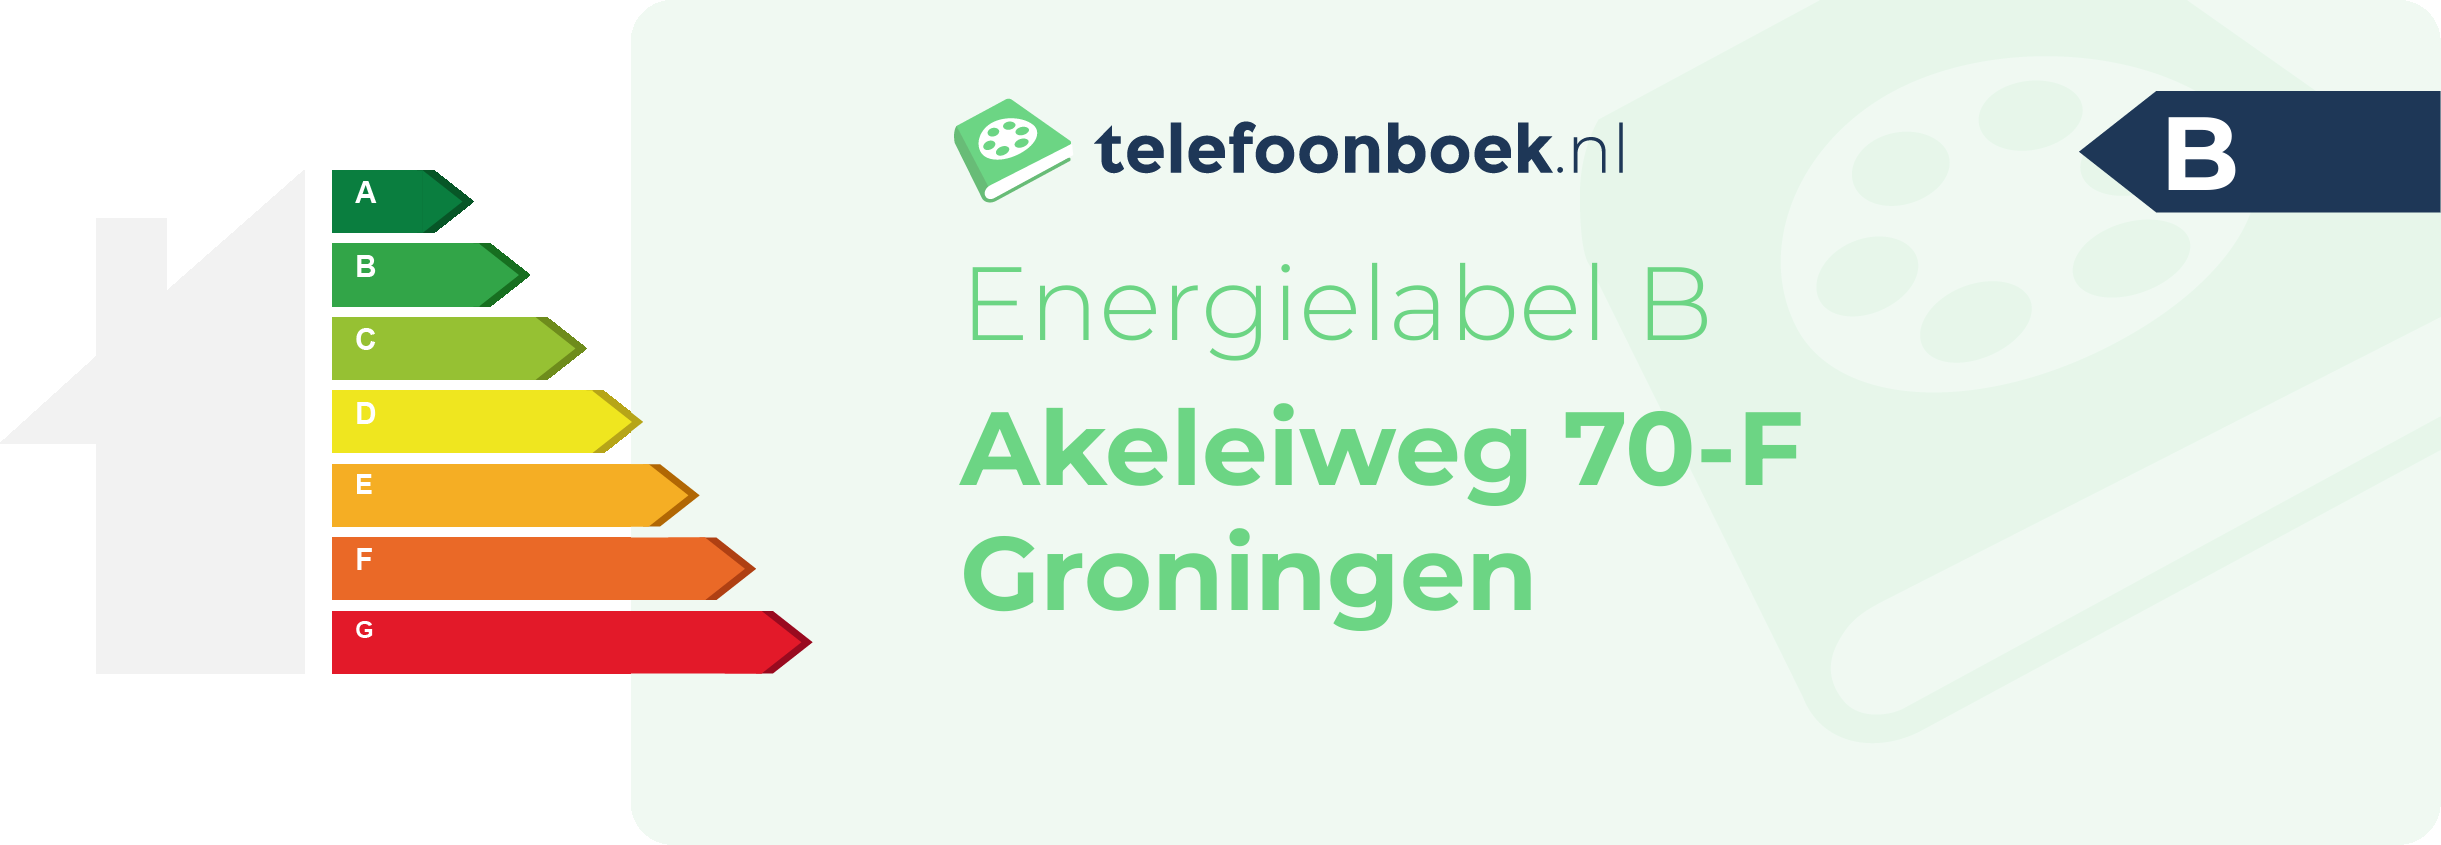 Energielabel Akeleiweg 70-F Groningen